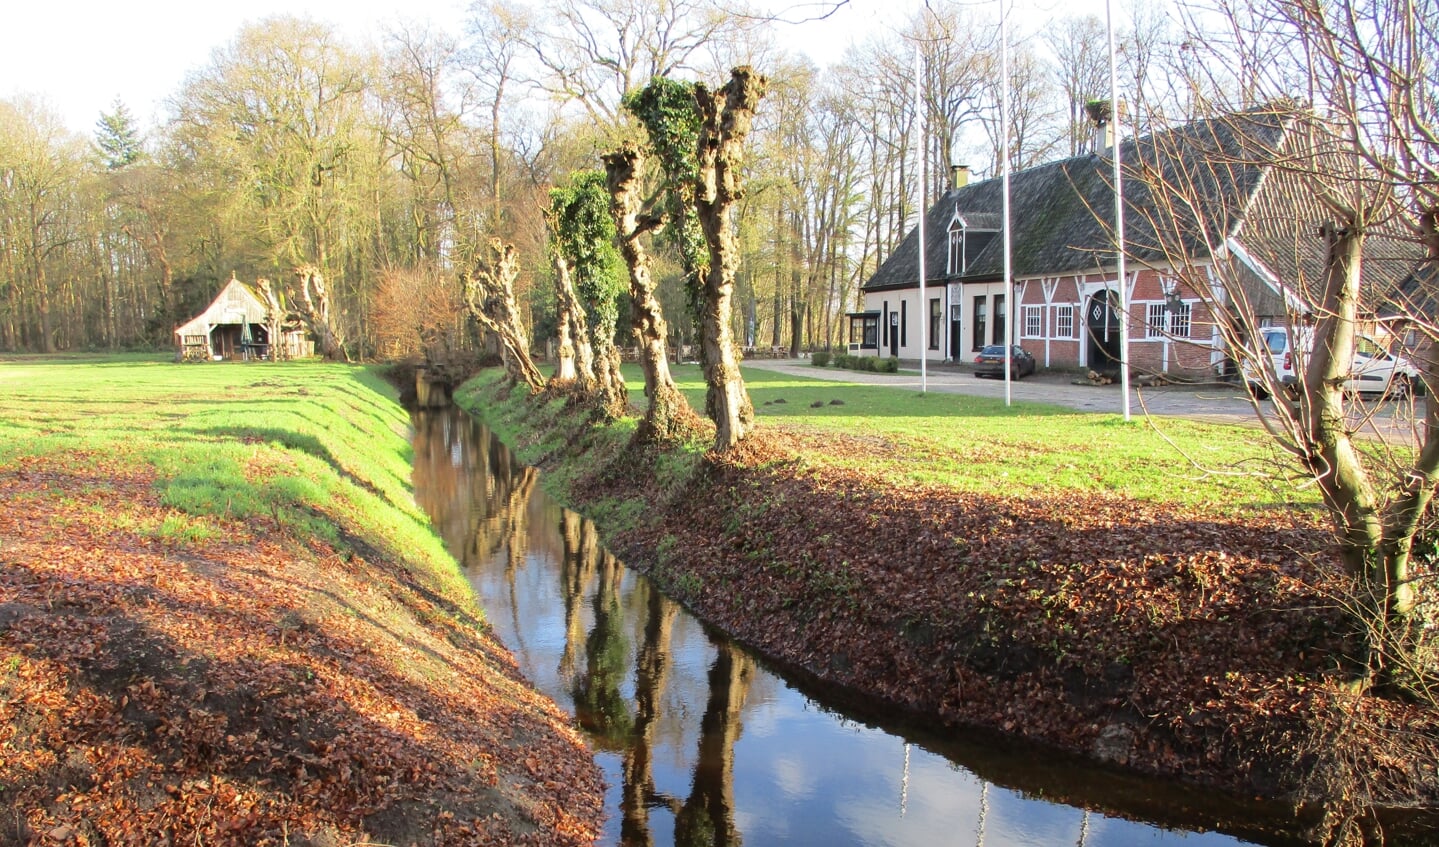 Havezathe Het Everloo is één van de mooiere locaties in Twente voor een uitgebreide wandeling.